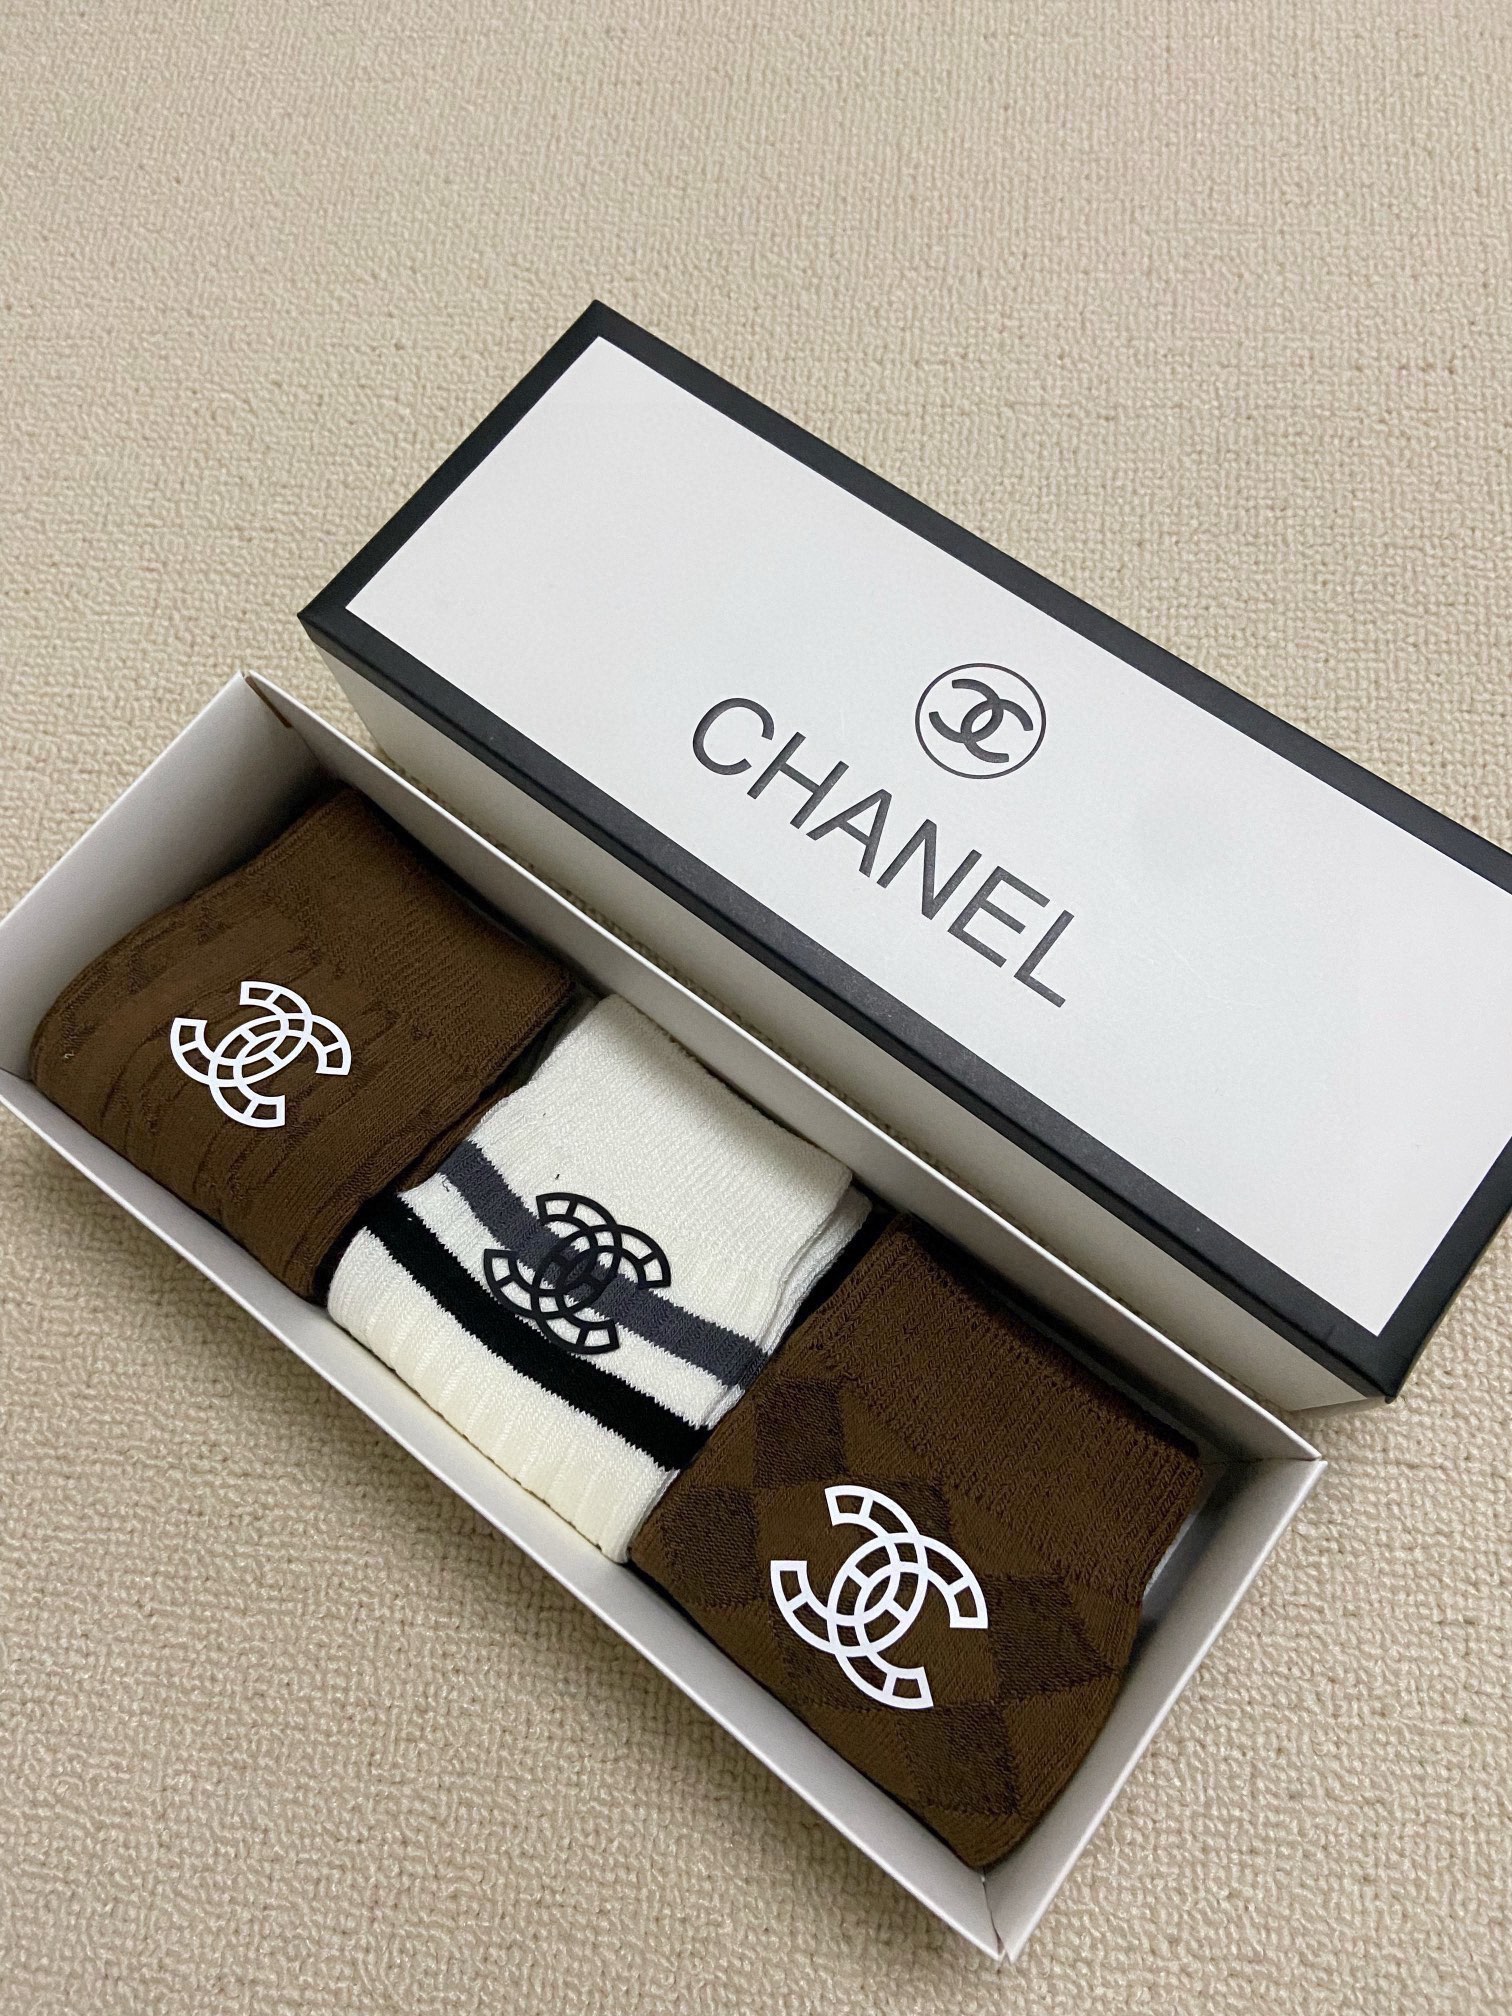 配包装一盒3双Chanel香奈儿经典字母logo纯棉中筒袜ins超火爆红人同款精美面料潮人必备经典配色个